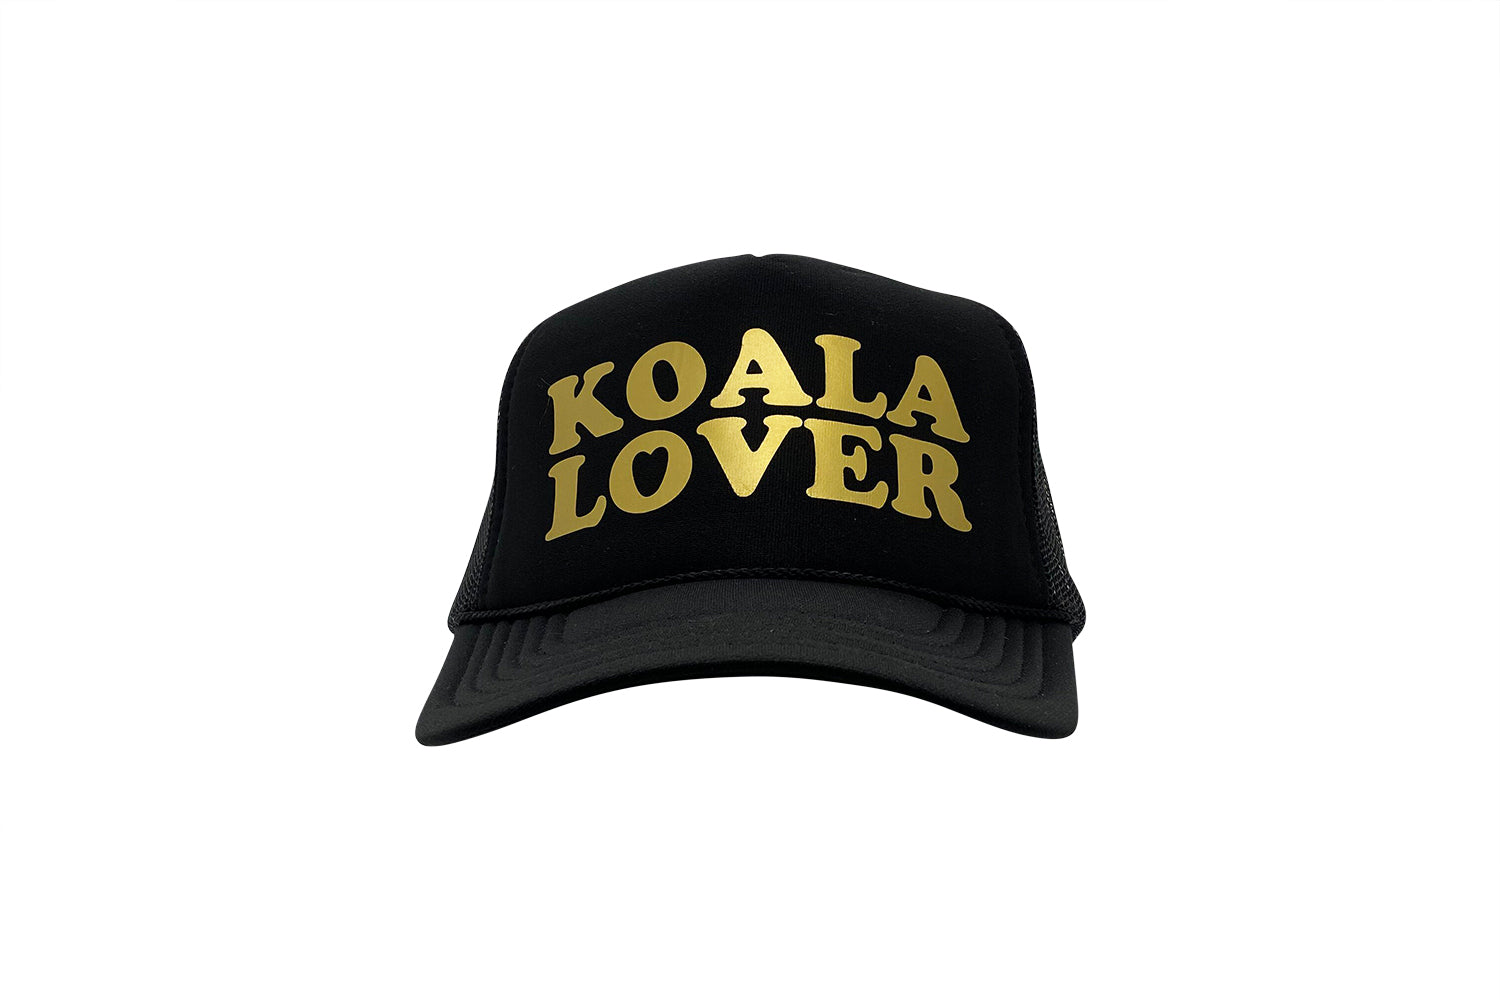 Koala Lover (Black & Gold)